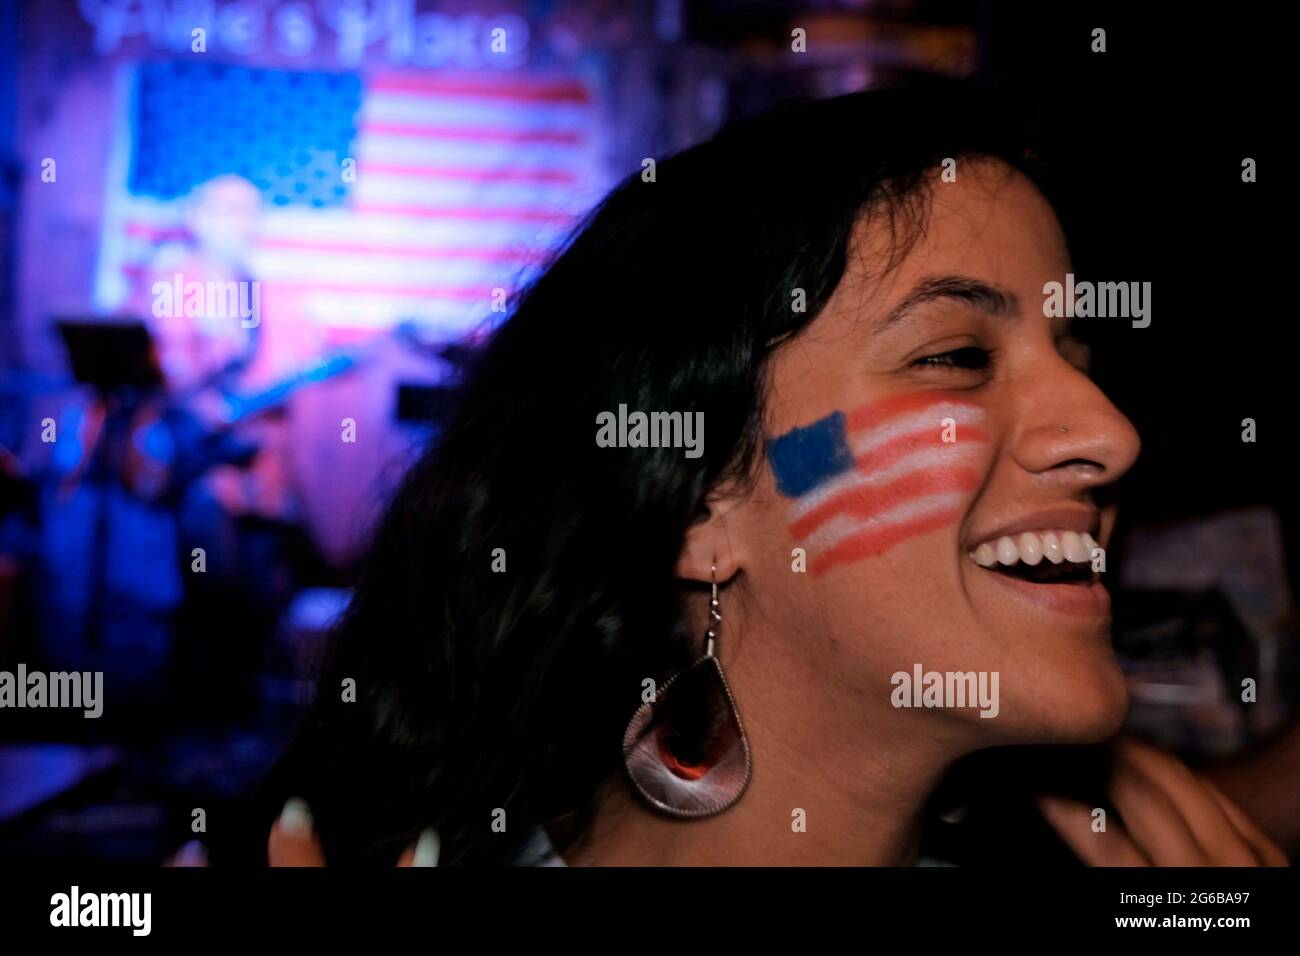 Le drapeau américain est peint sur le visage d'une jeune femme lors de la fête de l'indépendance du 4 juillet aux États-Unis, au pub Mike's place, le 4 juillet 2021 à Jérusalem, en Israël. Banque D'Images